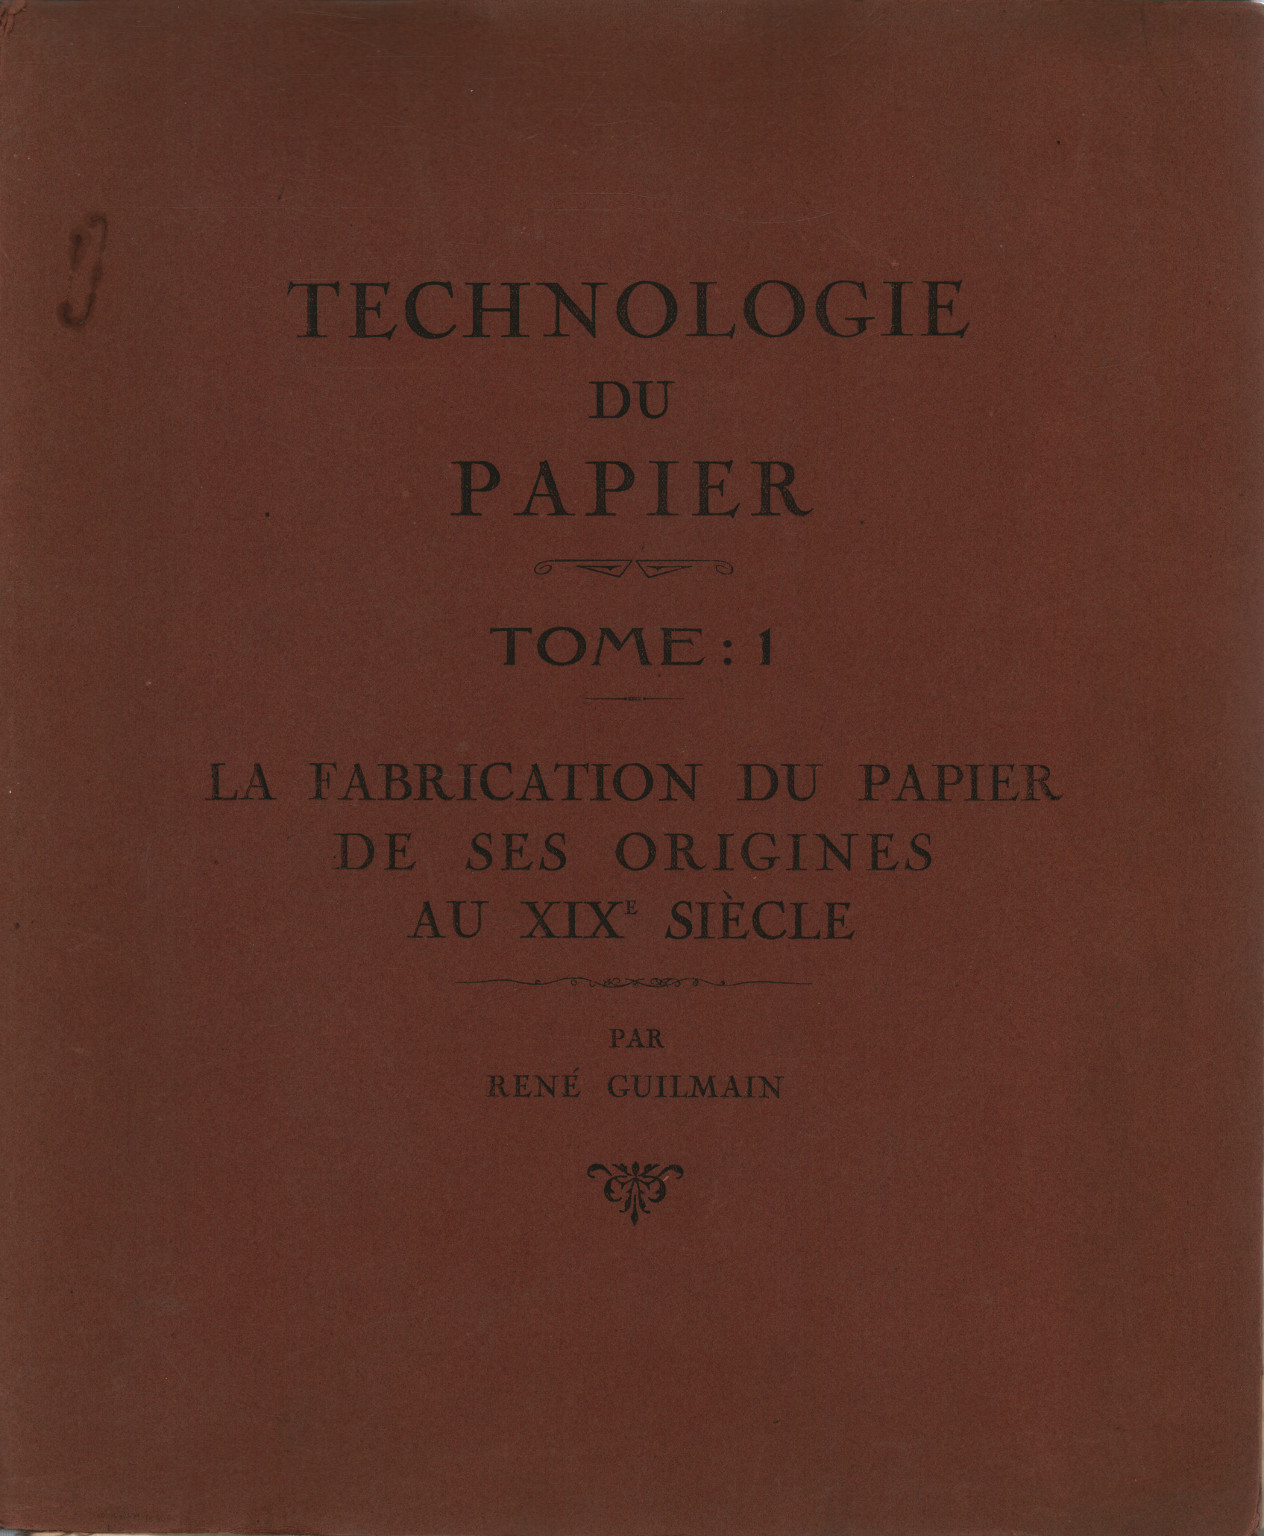 Technologie du papier. Tomo: 1, s.una.